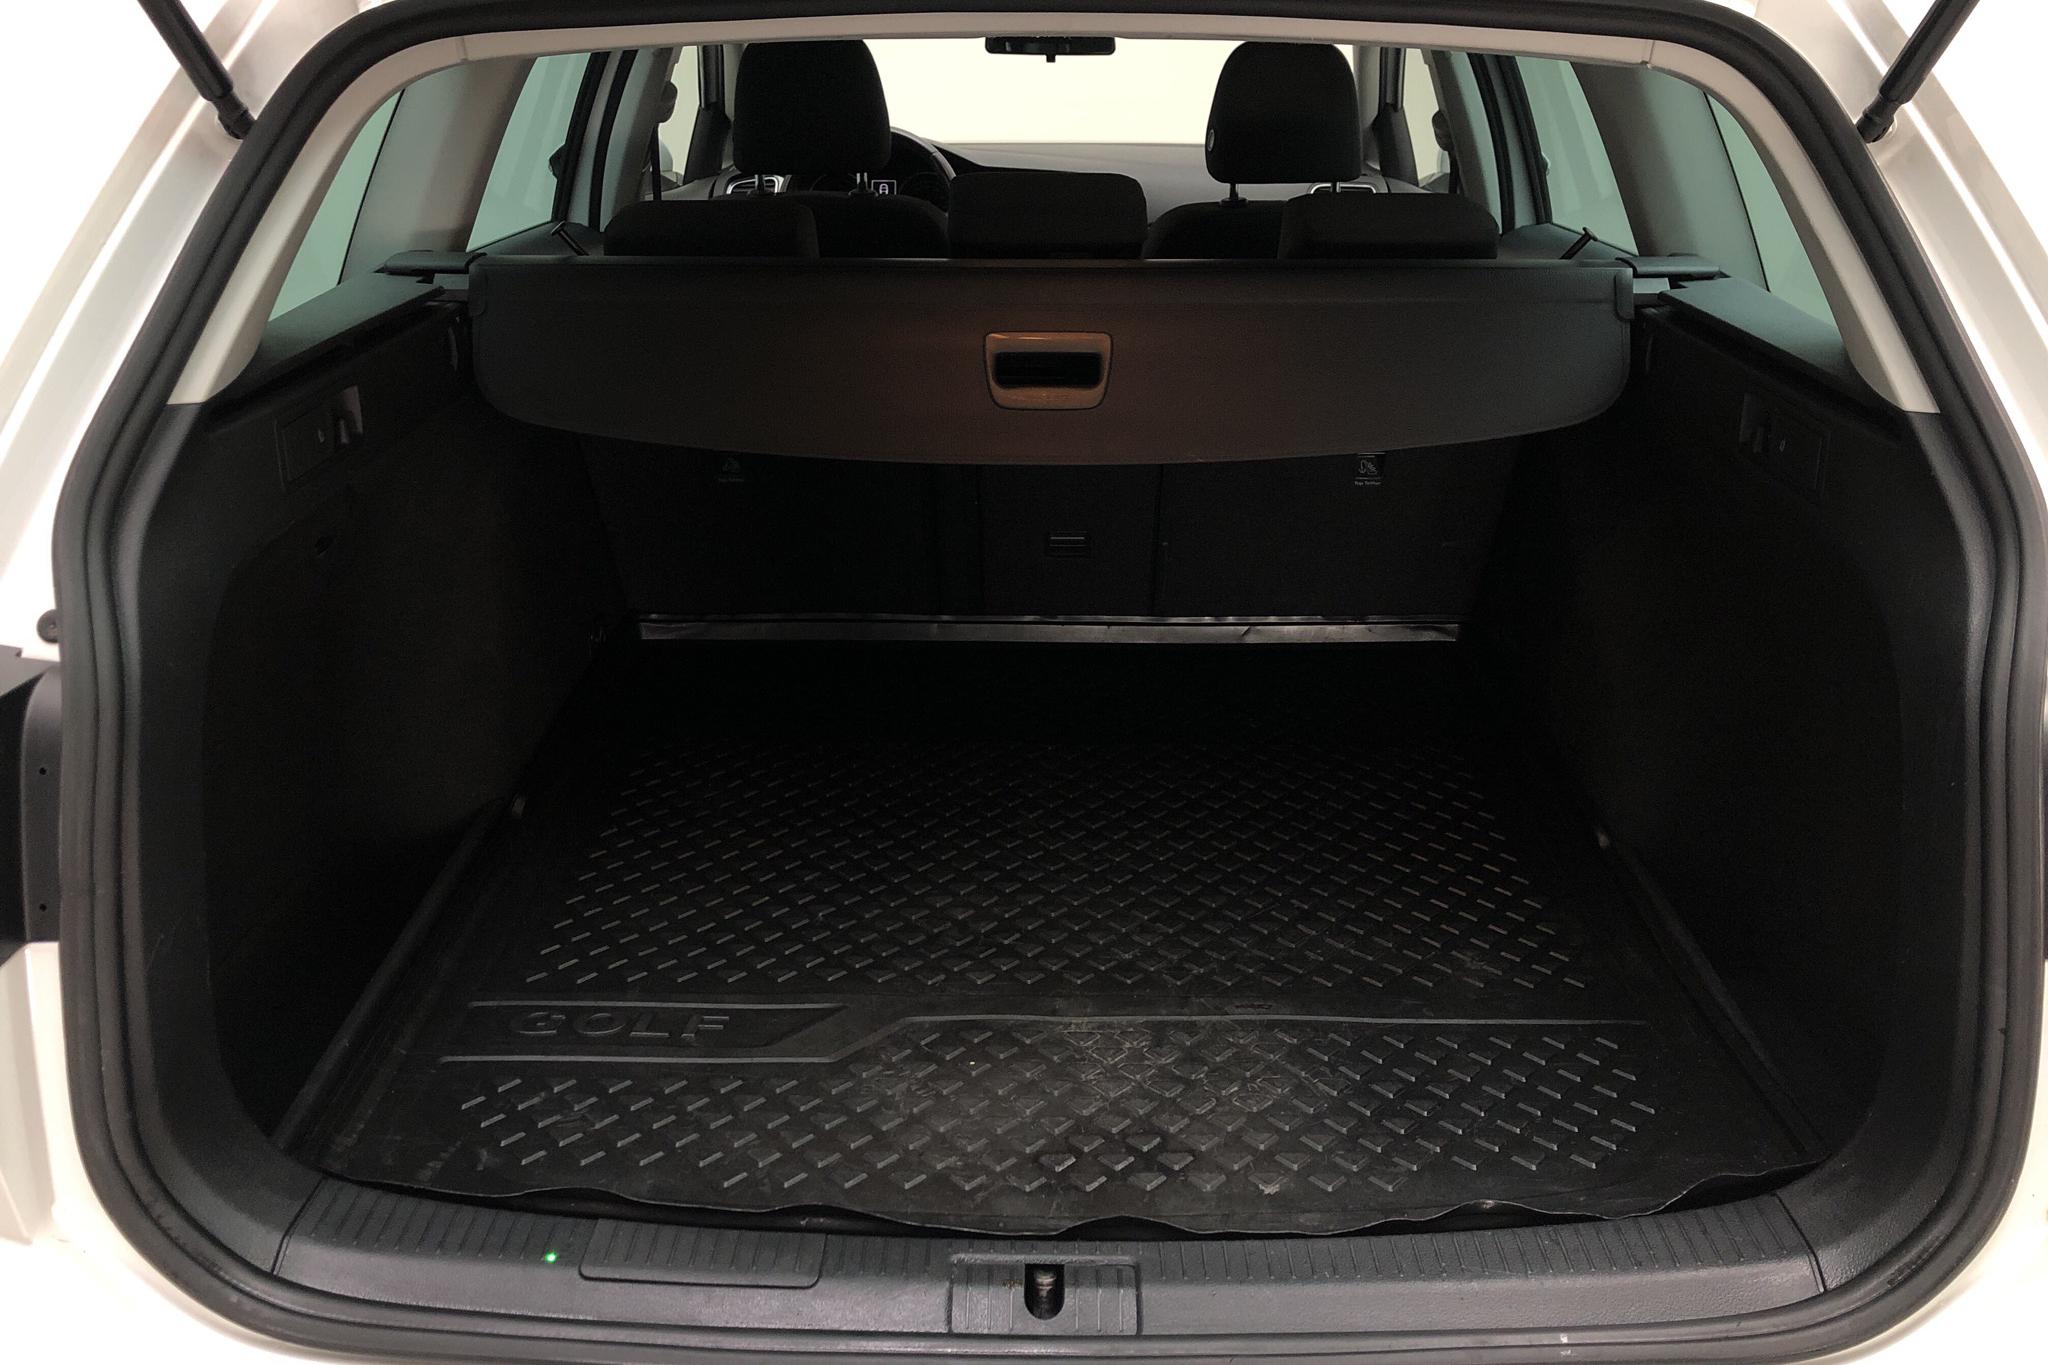 VW Golf VII 1.6 TDI Sportscombi (115hk) - 10 413 mil - Automat - vit - 2019